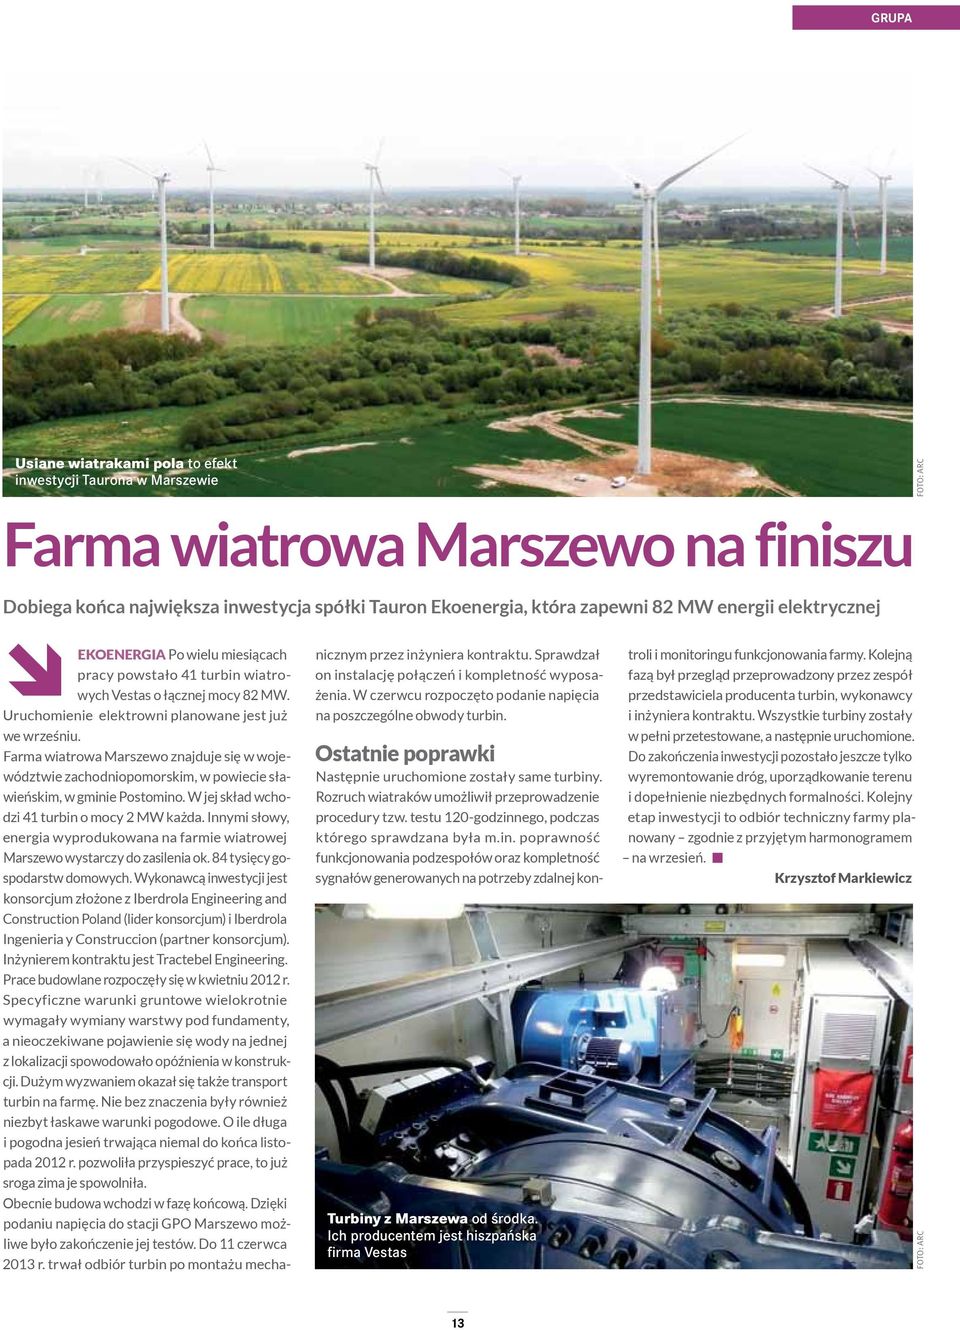 Farma wiatrowa Marszewo znajduje się w województwie zachodniopomorskim, w powiecie sławieńskim, w gminie Postomino. W jej skład wchodzi 41 turbin o mocy 2 MW każda.